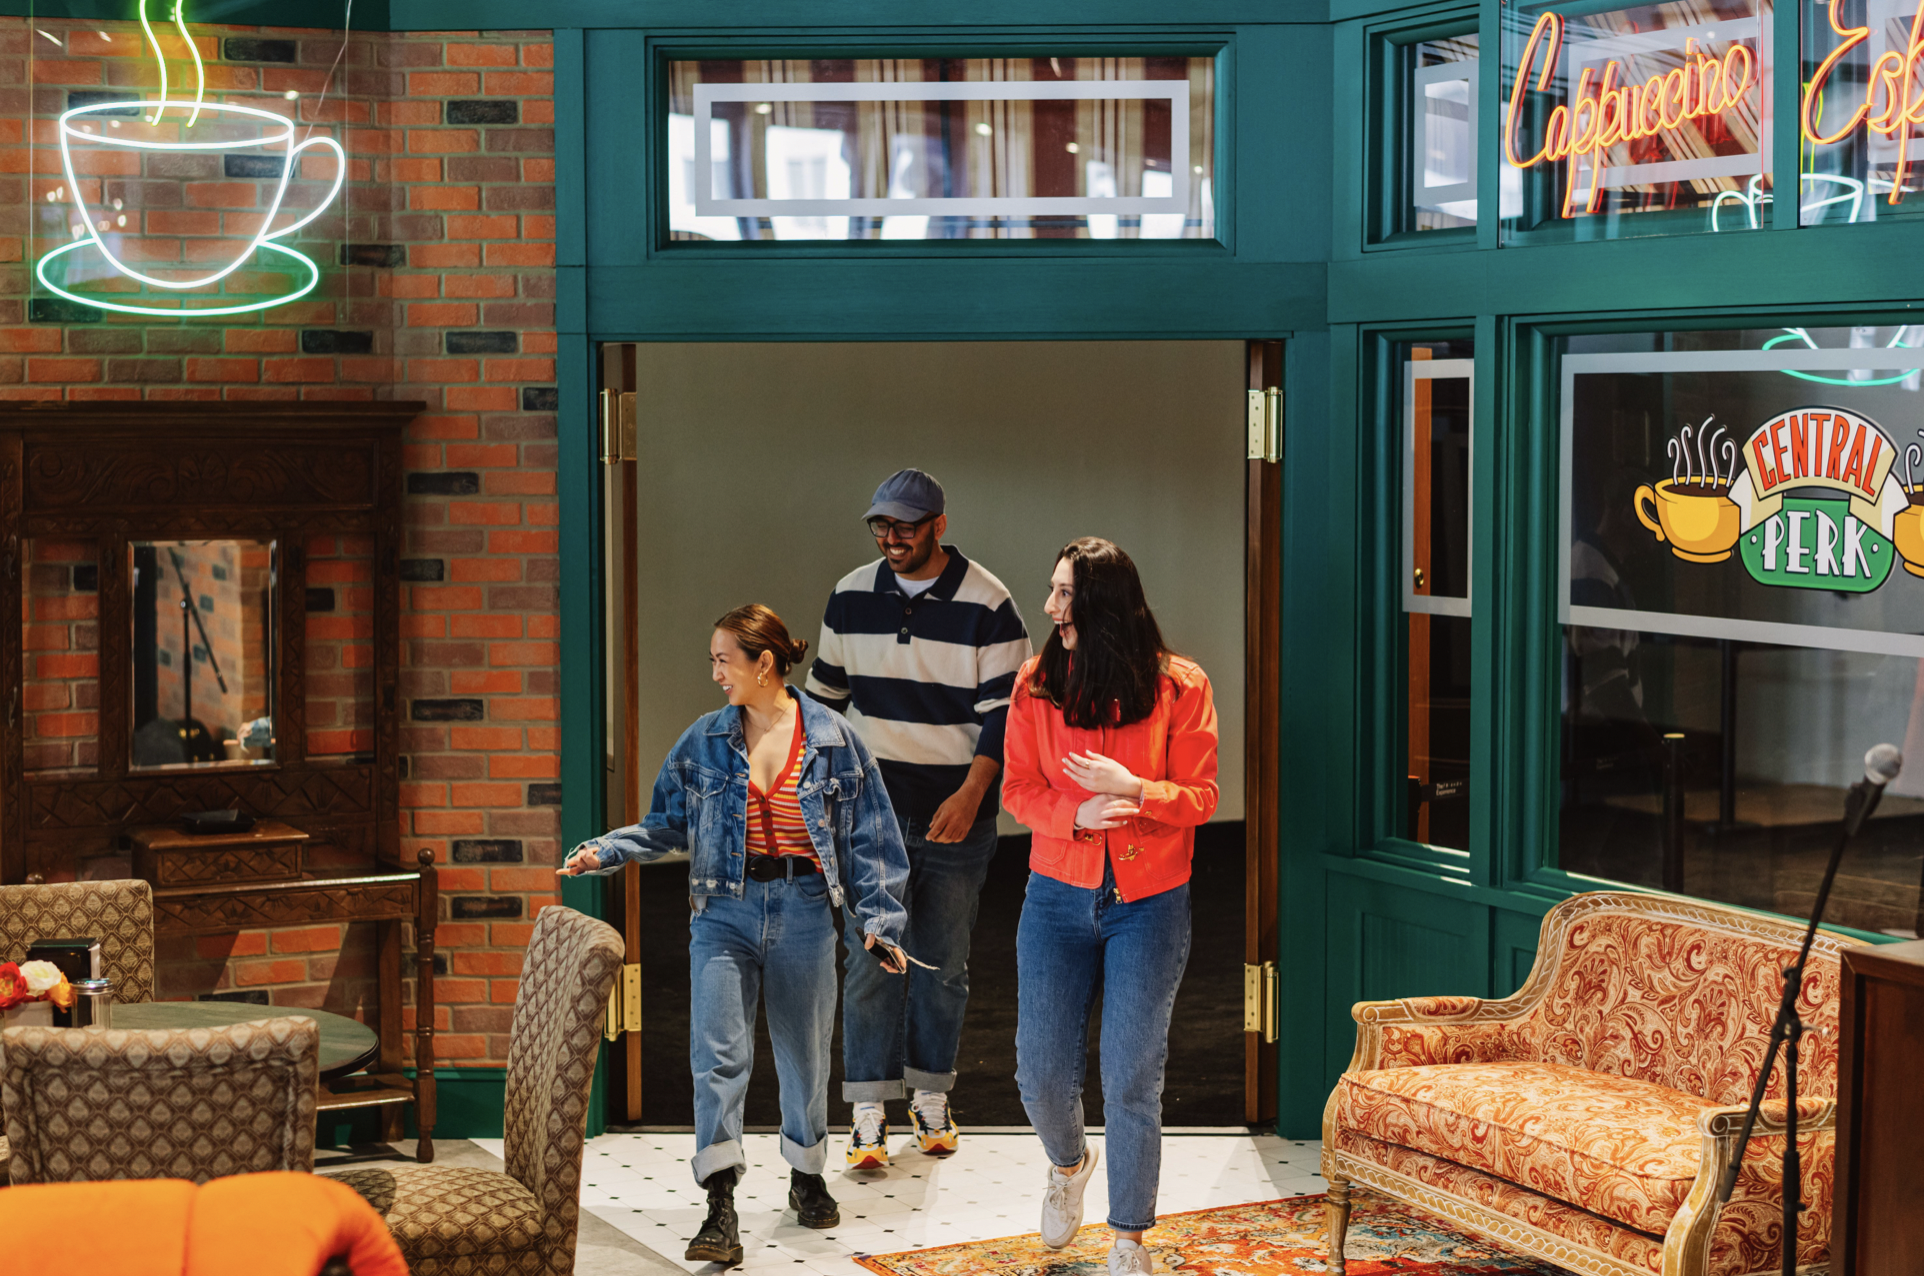 Friends»: Pour les 20 ans de la série, le Central Perk ouvre ses portes à  New York